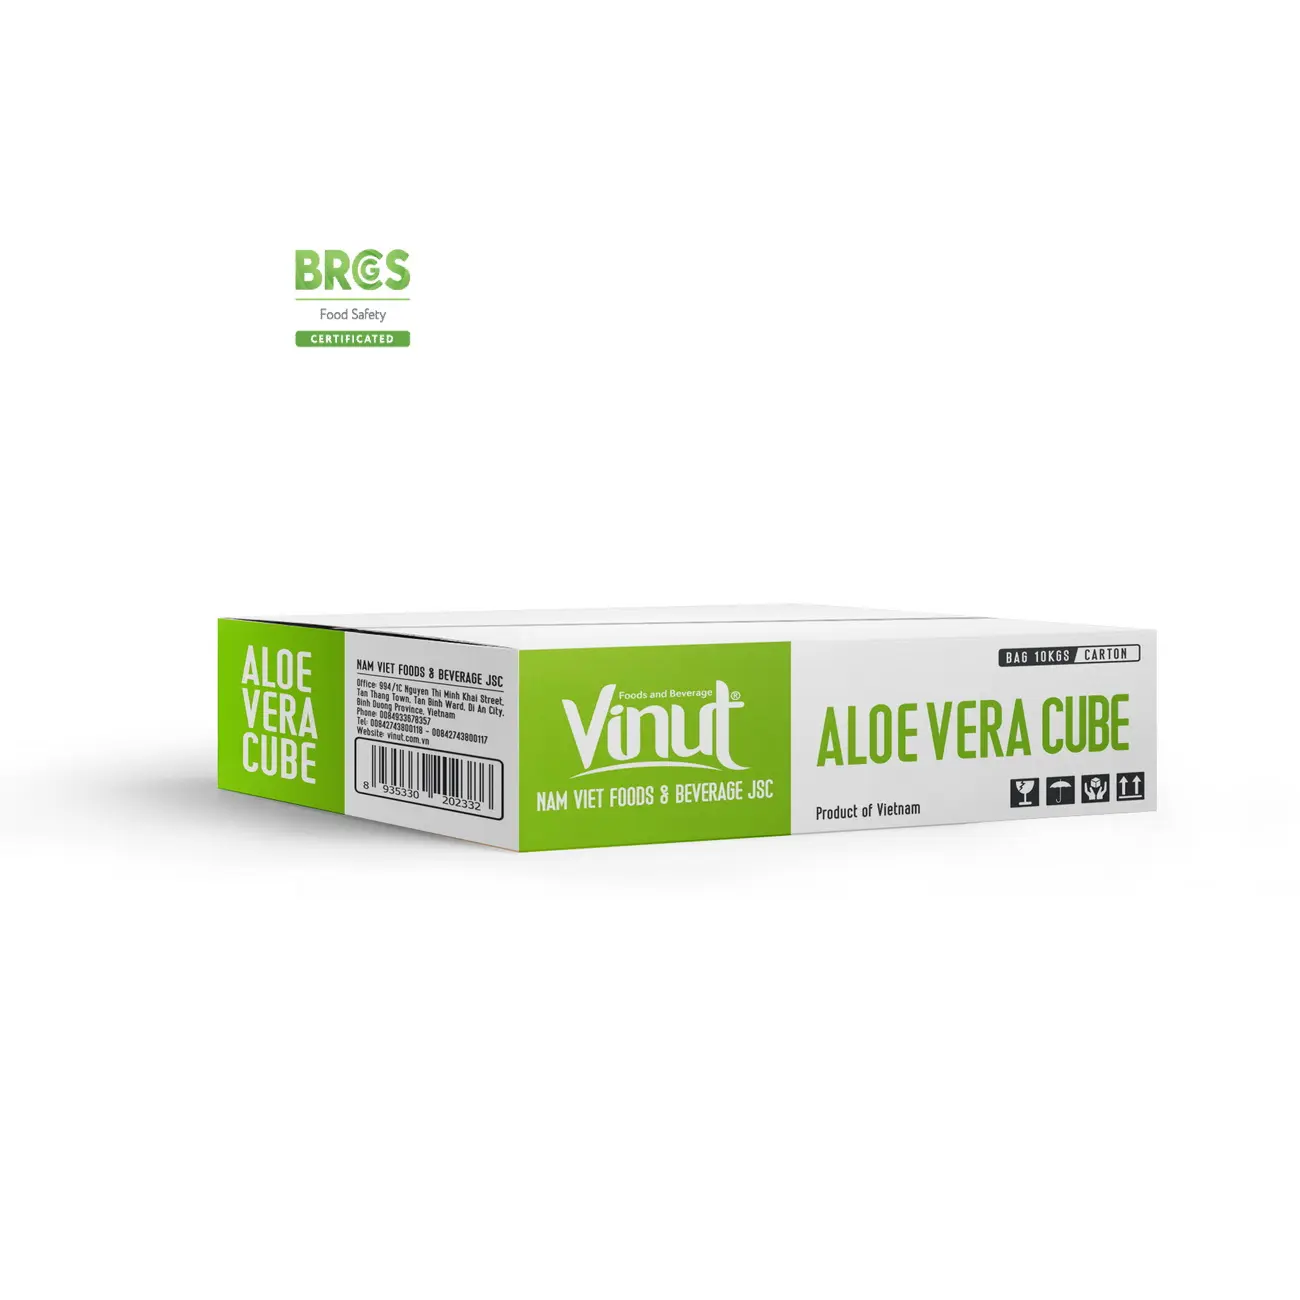 Saco 10kg/ Carton Vinut Aloe Vera Cubes Fornecedores e fabricantes sem açúcar Aloe Vera Vietnã